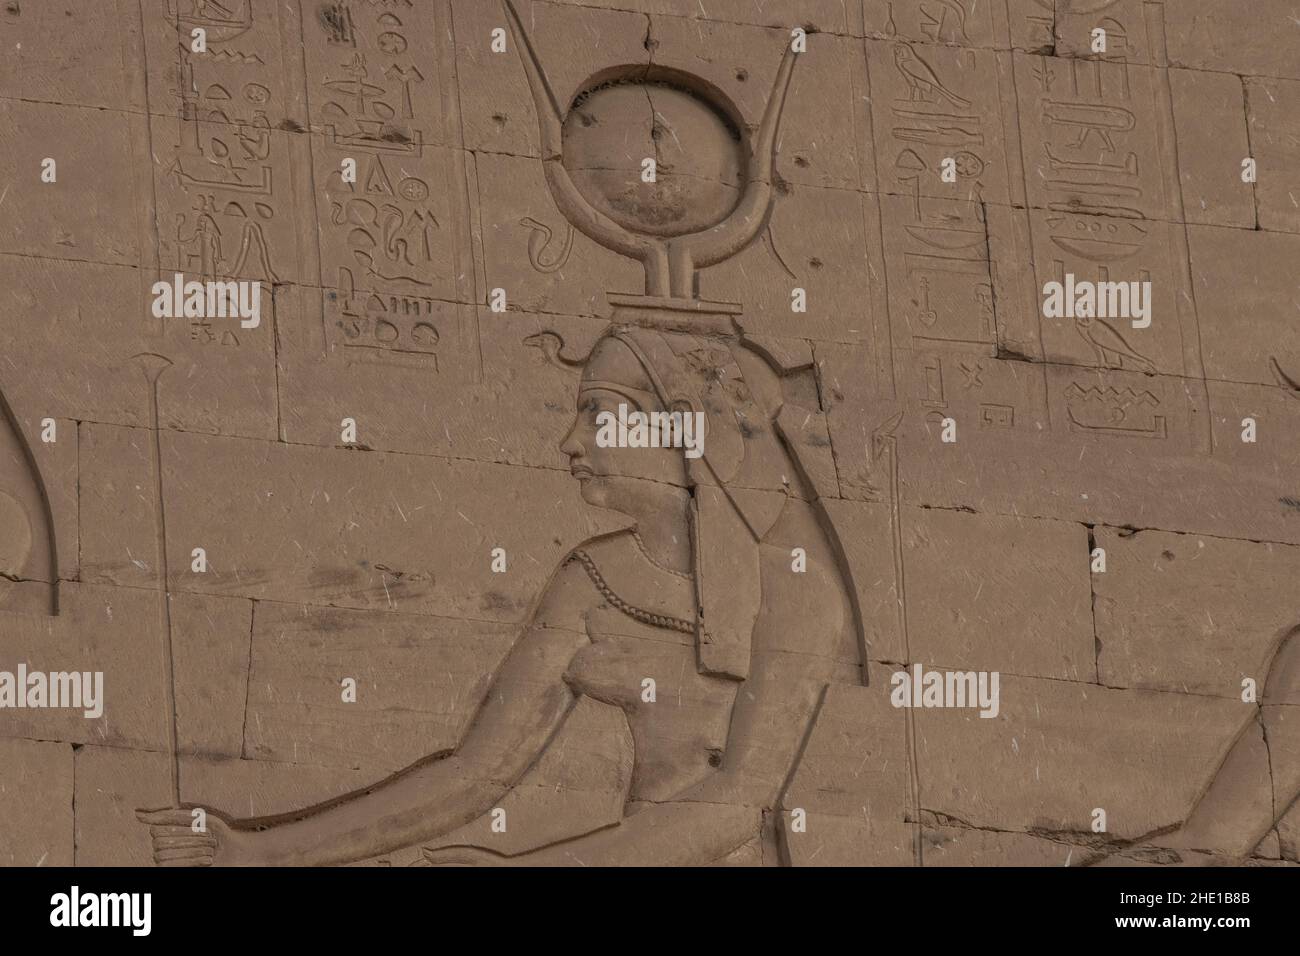 Alte ägyptische Schnitzereien an der Außenseite des Edfu-Tempels eine archäologische Stätte in Ägypten. Stockfoto